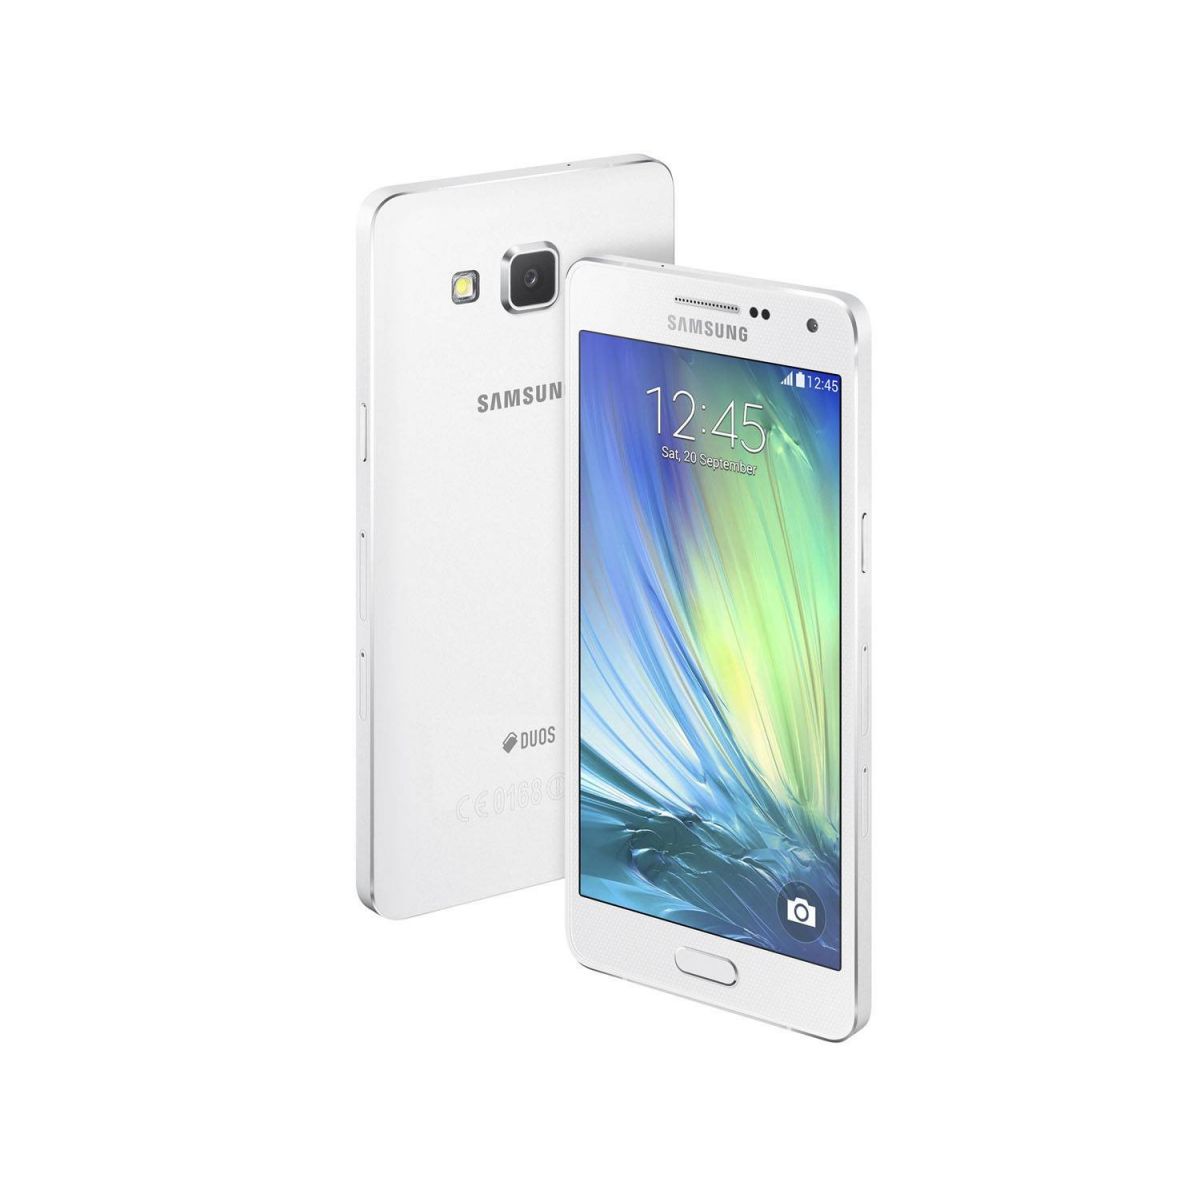 Smartphone Galaxy A5 Duos Dual Chip 4G Android 4.4 Câm. 13MP Tela 5 Proc. Quad Core Branco SM-A500M/DS - Samsung